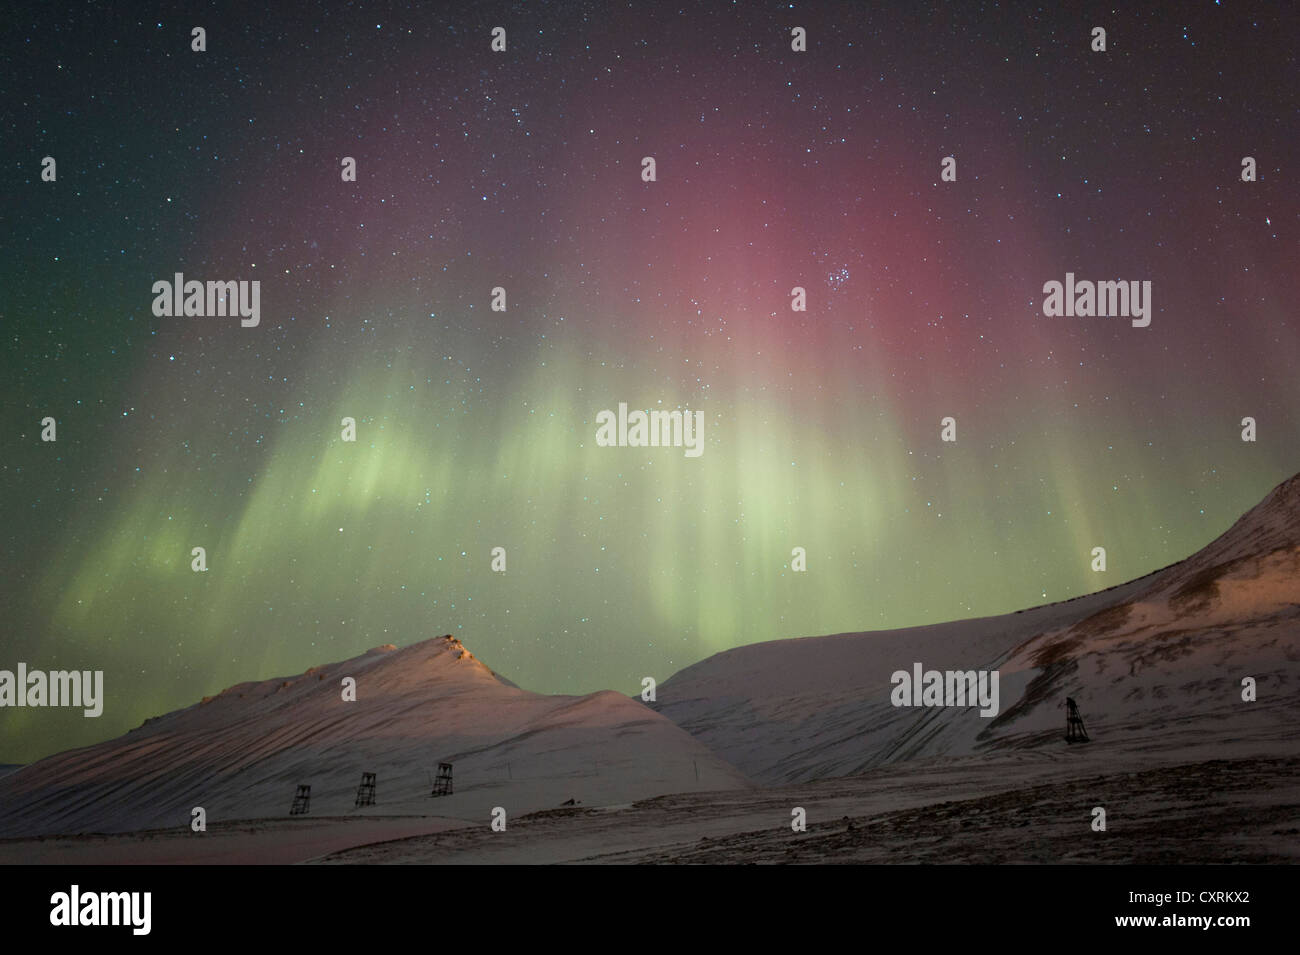 Vert et Rouge lumières polaires, northern lights, aurora borealis au-dessus d'un paysage couvert de neige, le paysage est éclairé par Banque D'Images